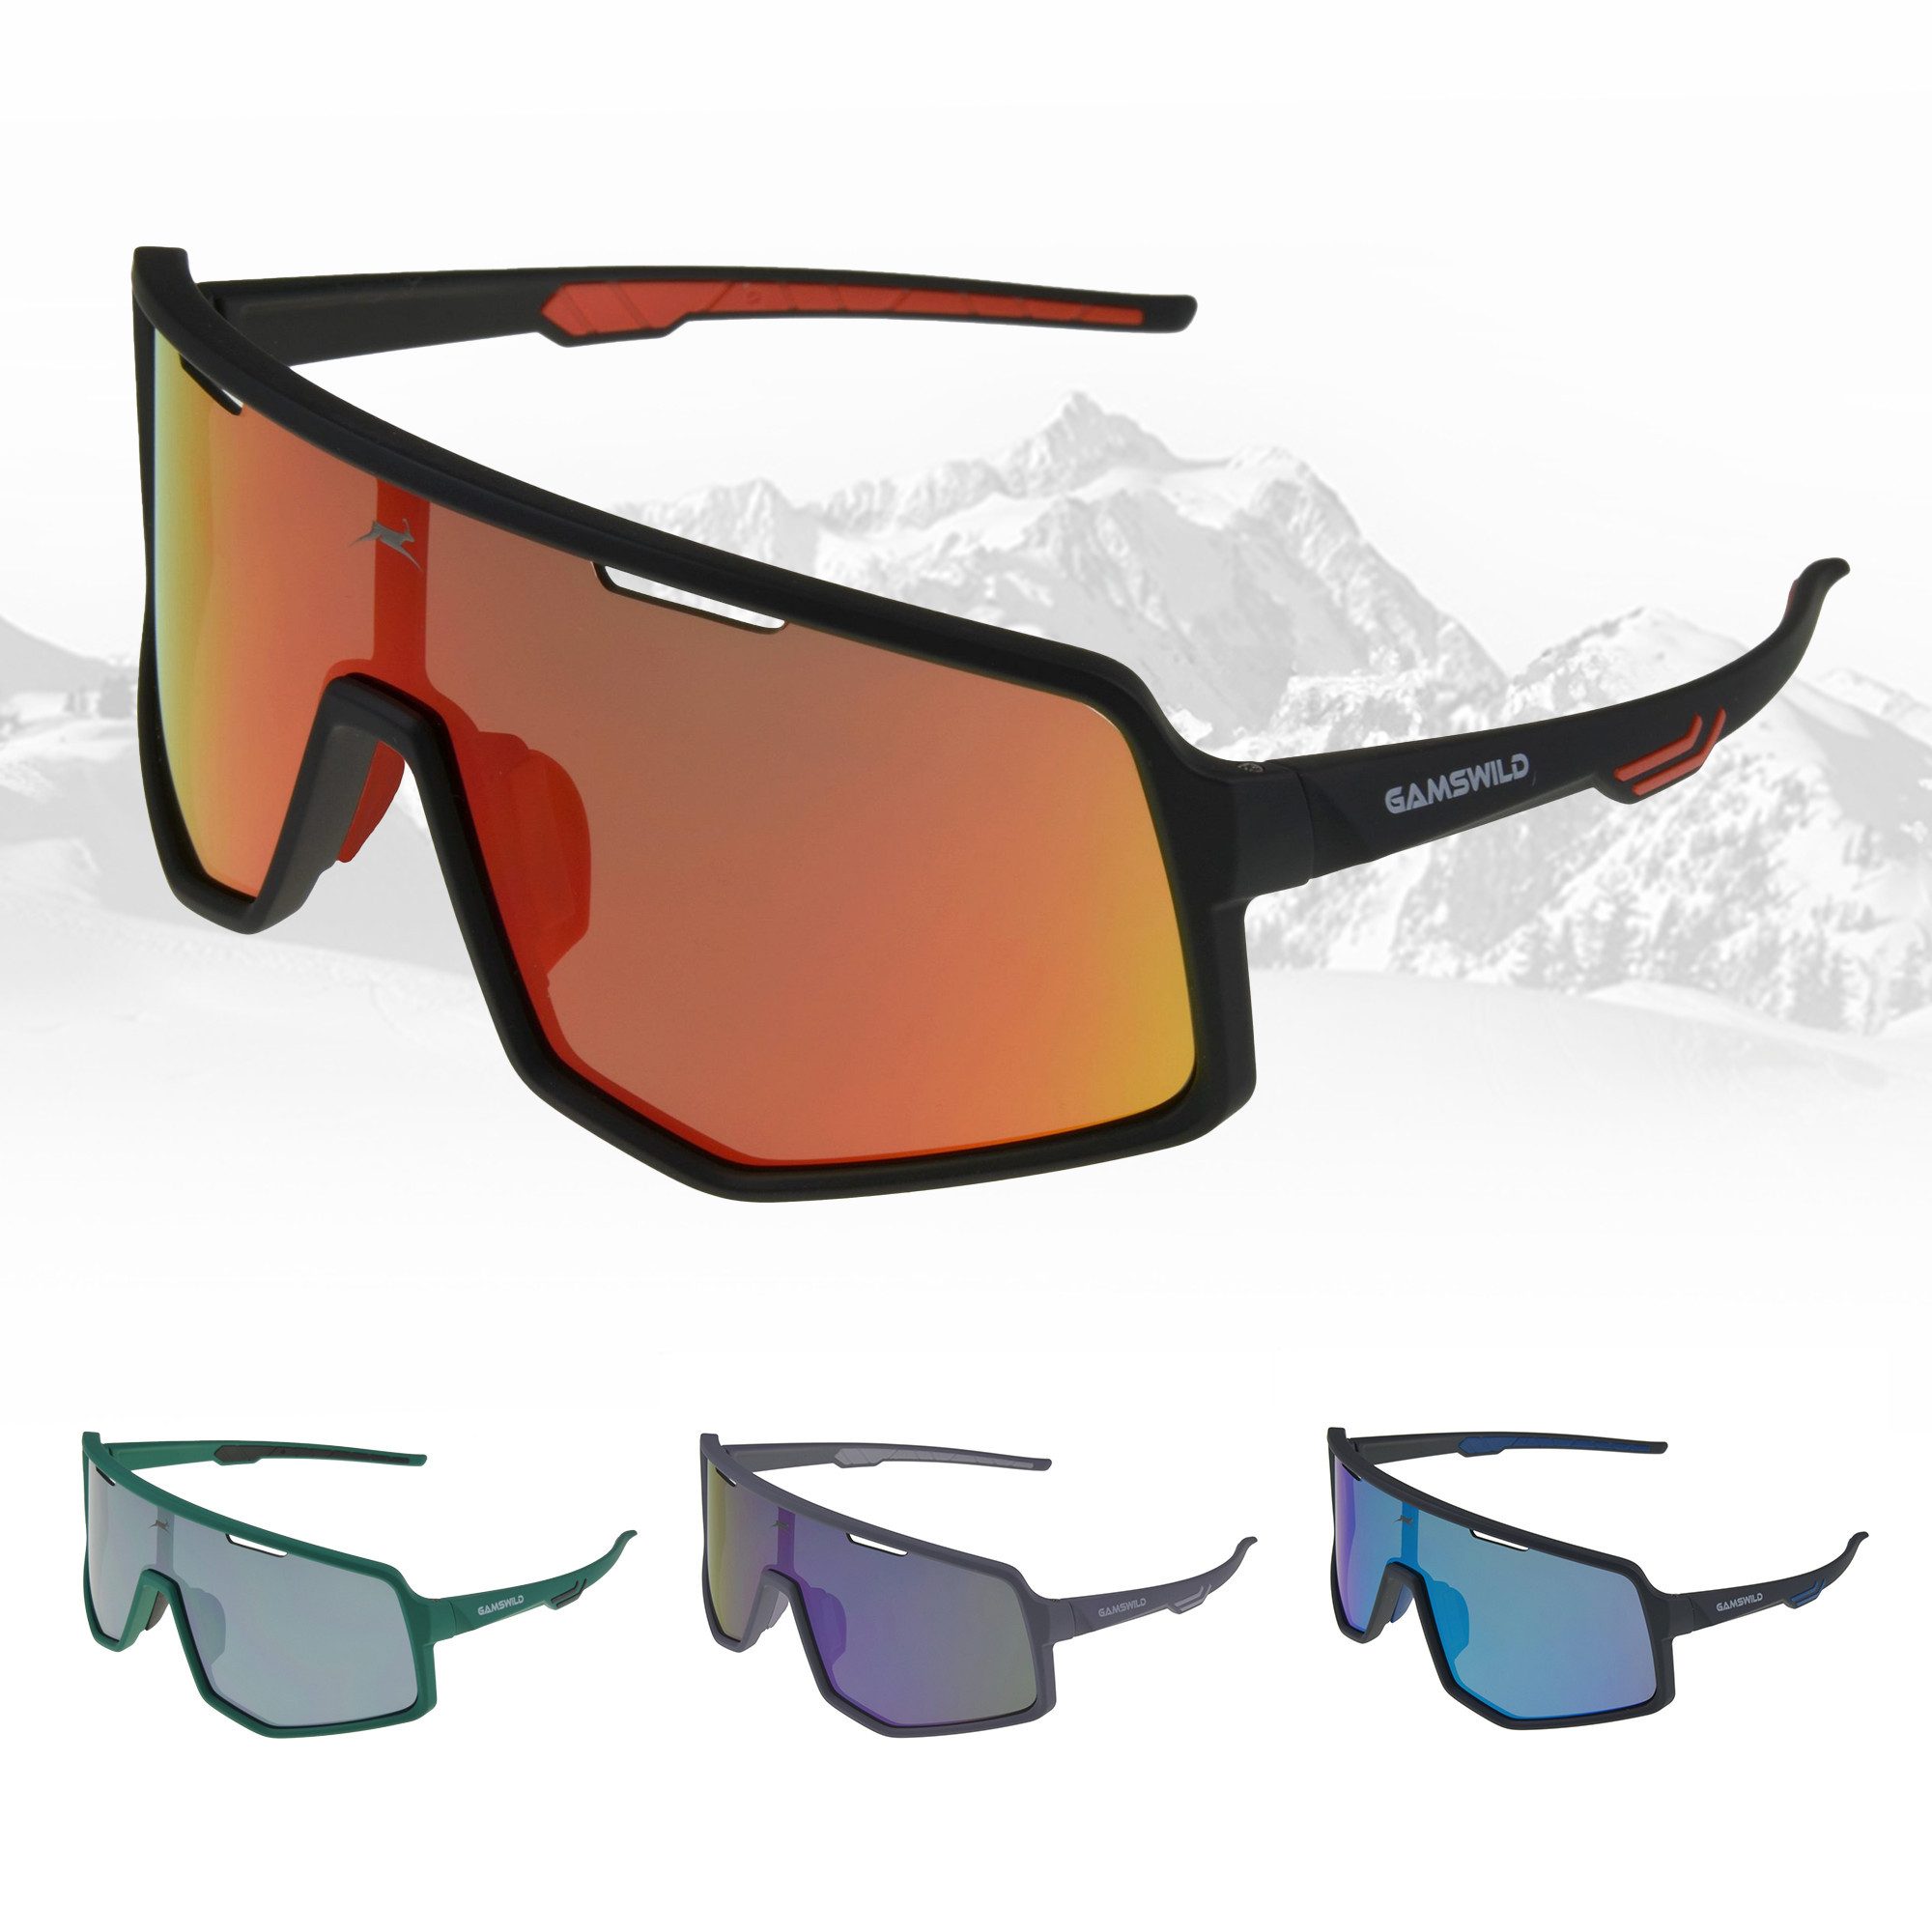 Gamswild Sonnenbrille UV400 Sonnenbrille Fahrradbrille Skibrille TR90 schnelle Brille Damen Herren Modell WS4042 in, lila, schwarz-blau, schwarz-rot, grün